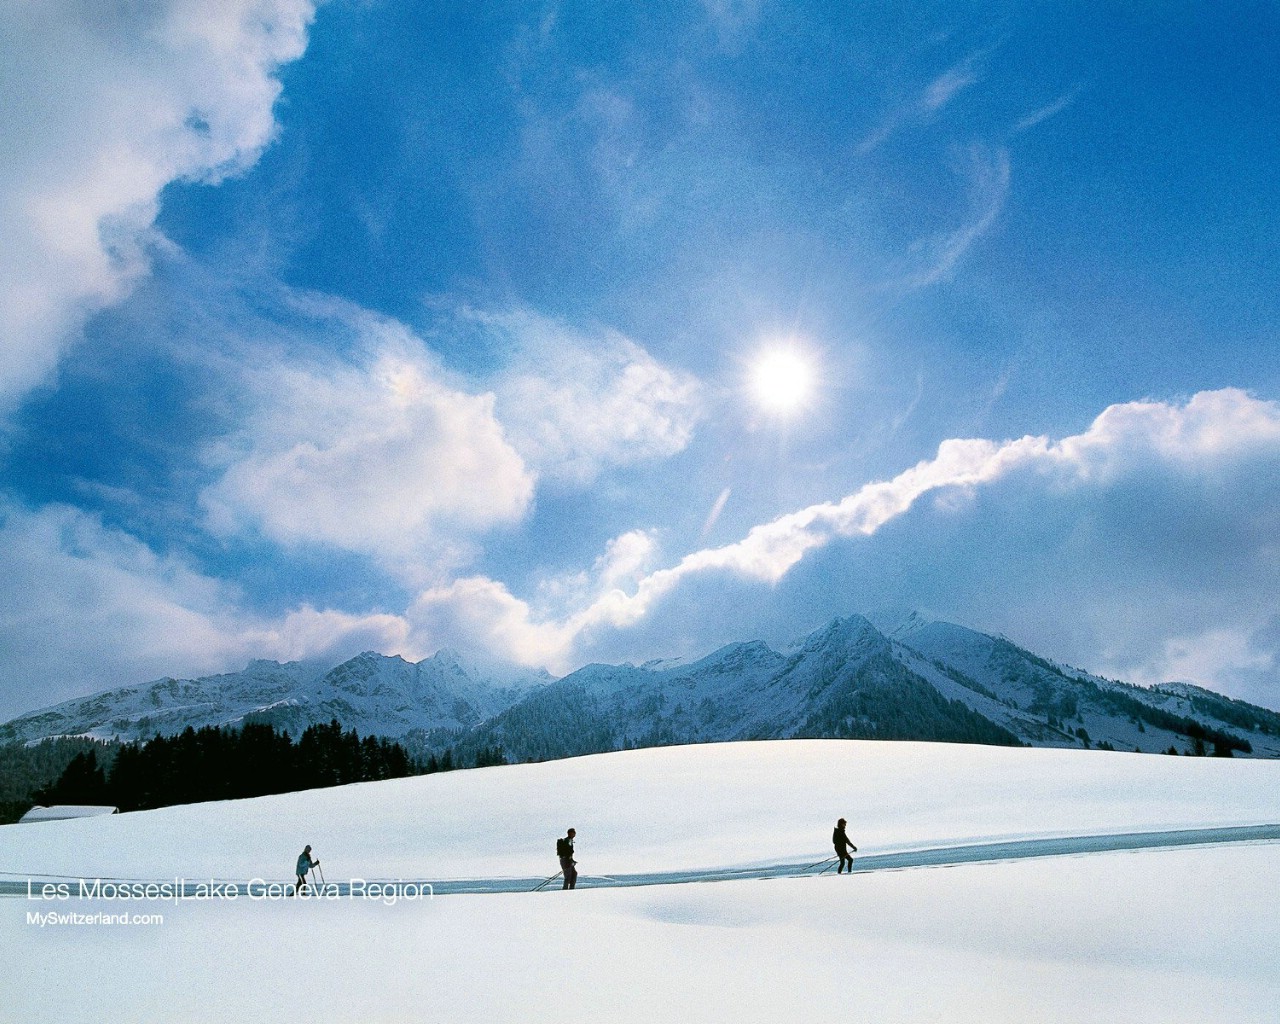 温泉与滑雪 瑞士冬季旅游景点壁纸 Les Mosse